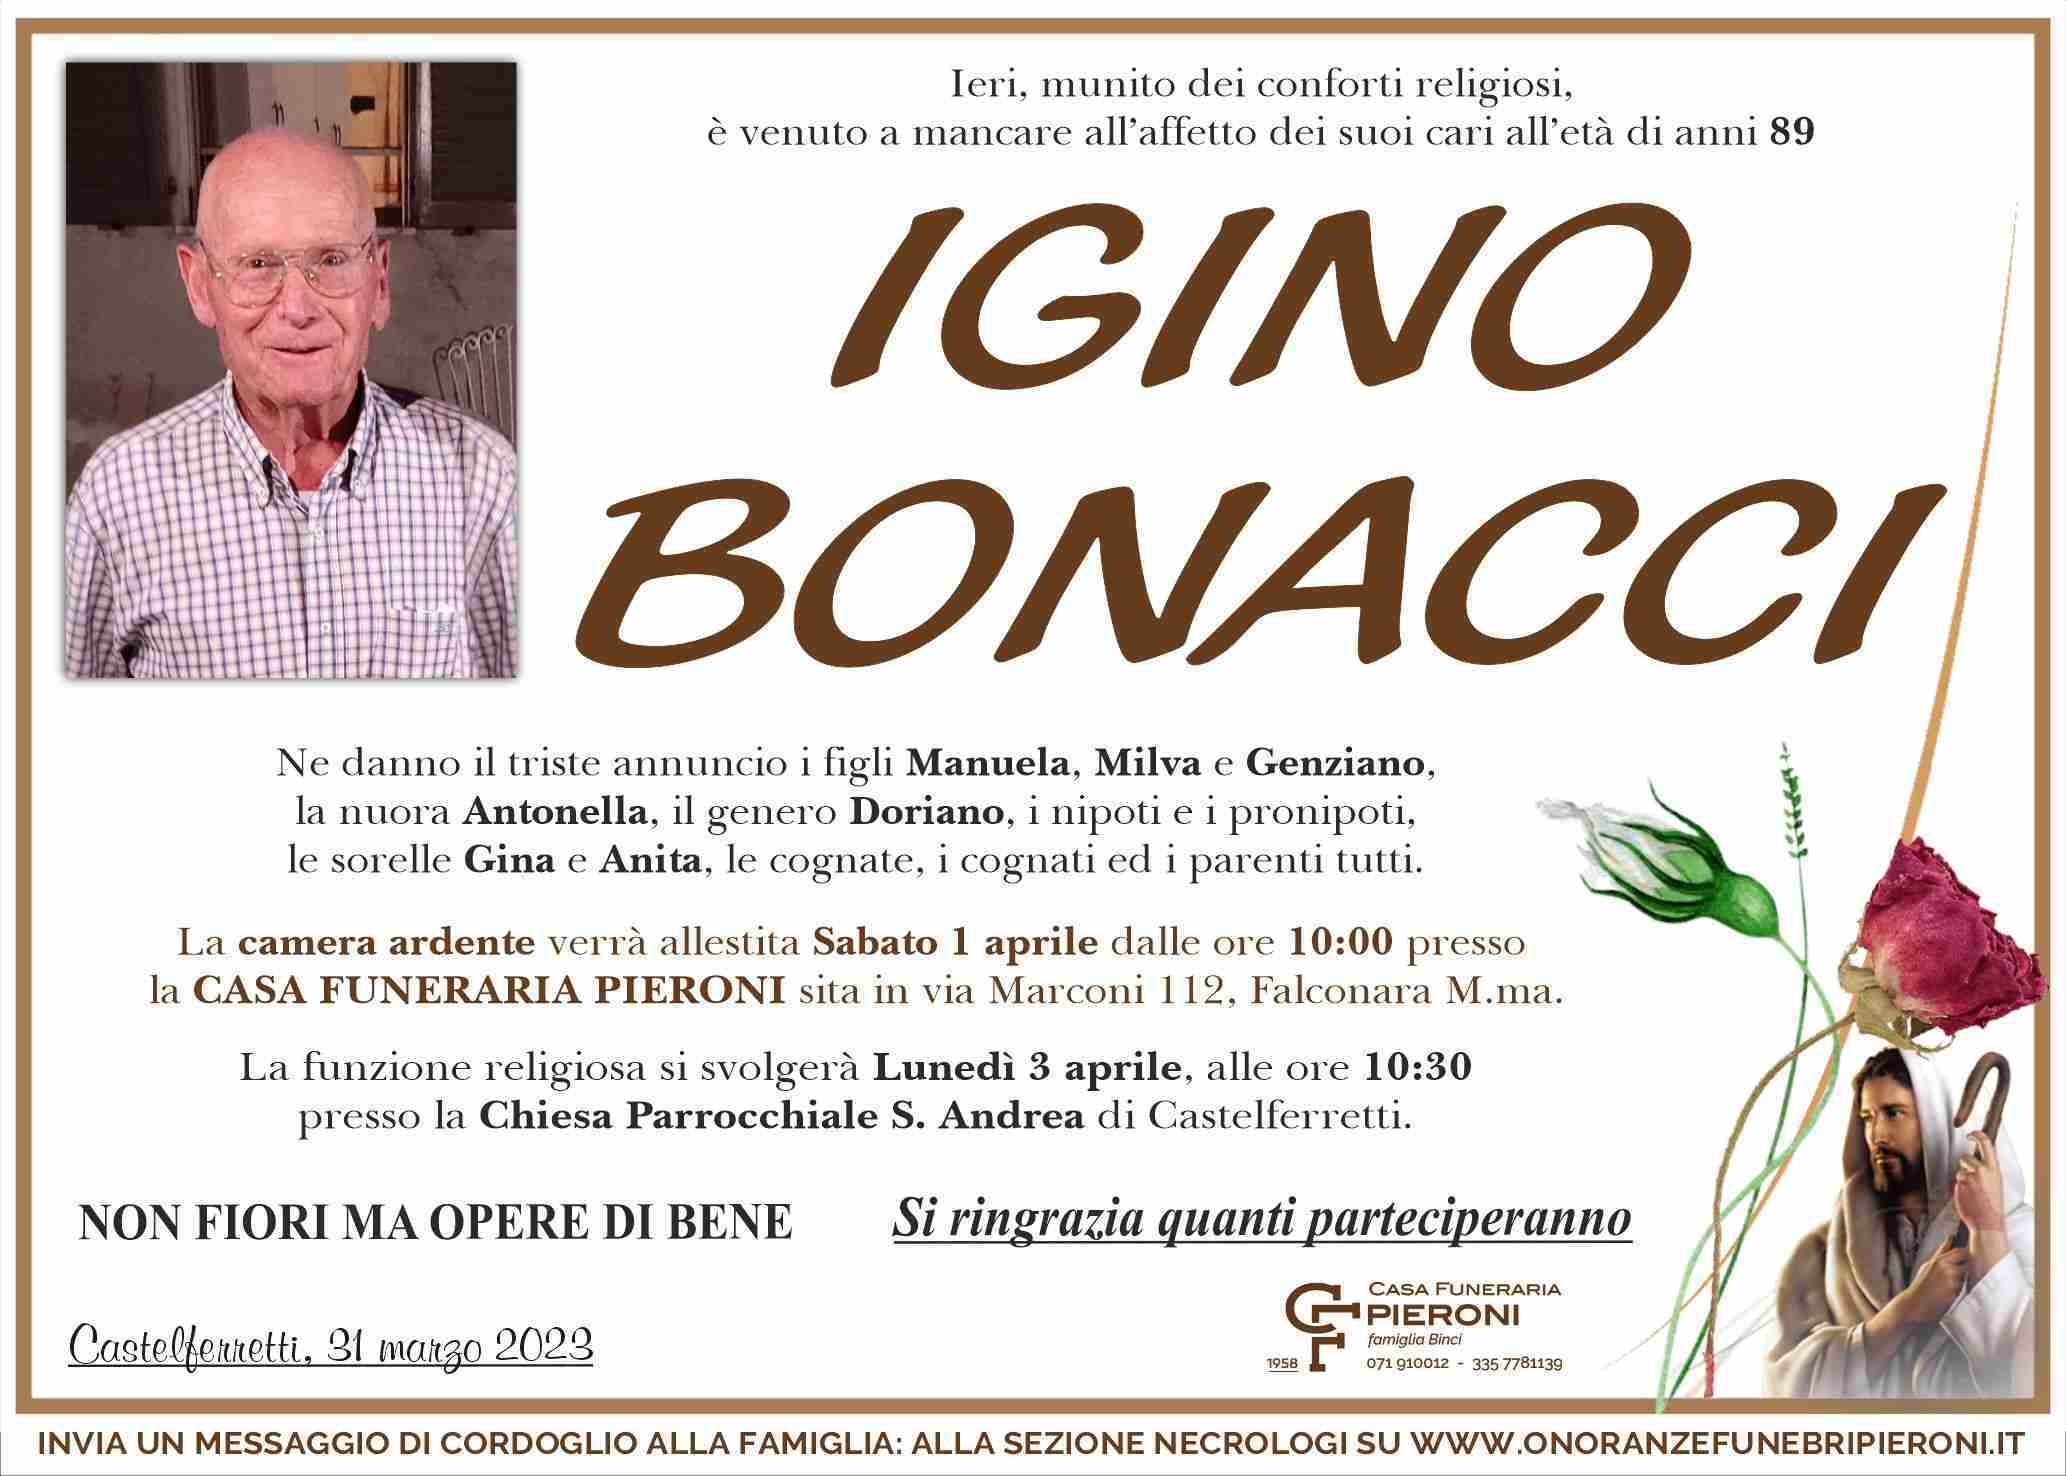 Igino Bonacci